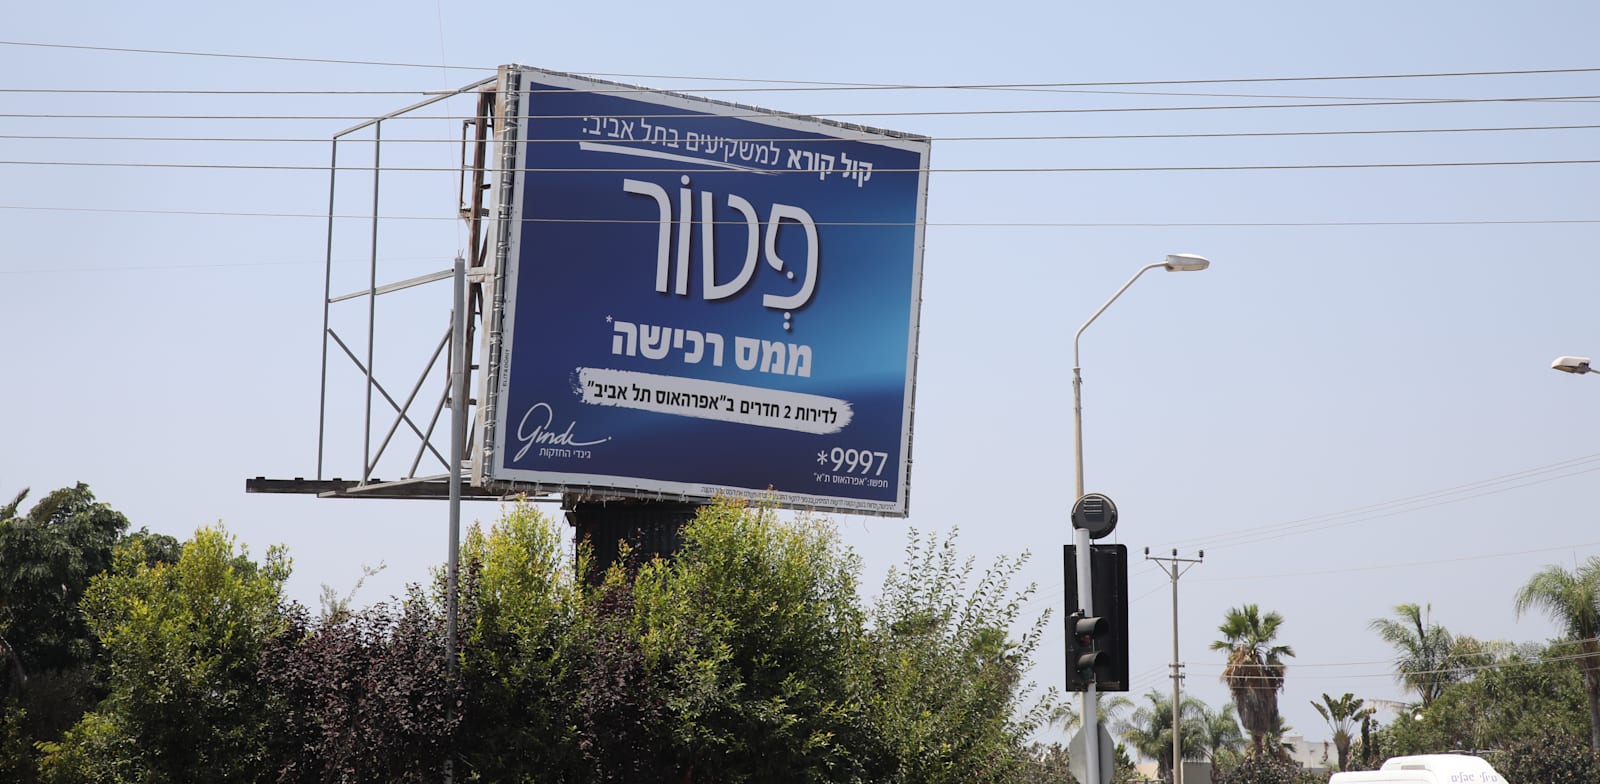 שלט של גינדי שמציעה פטור ממס רכישה / צילום: כדיה לוי